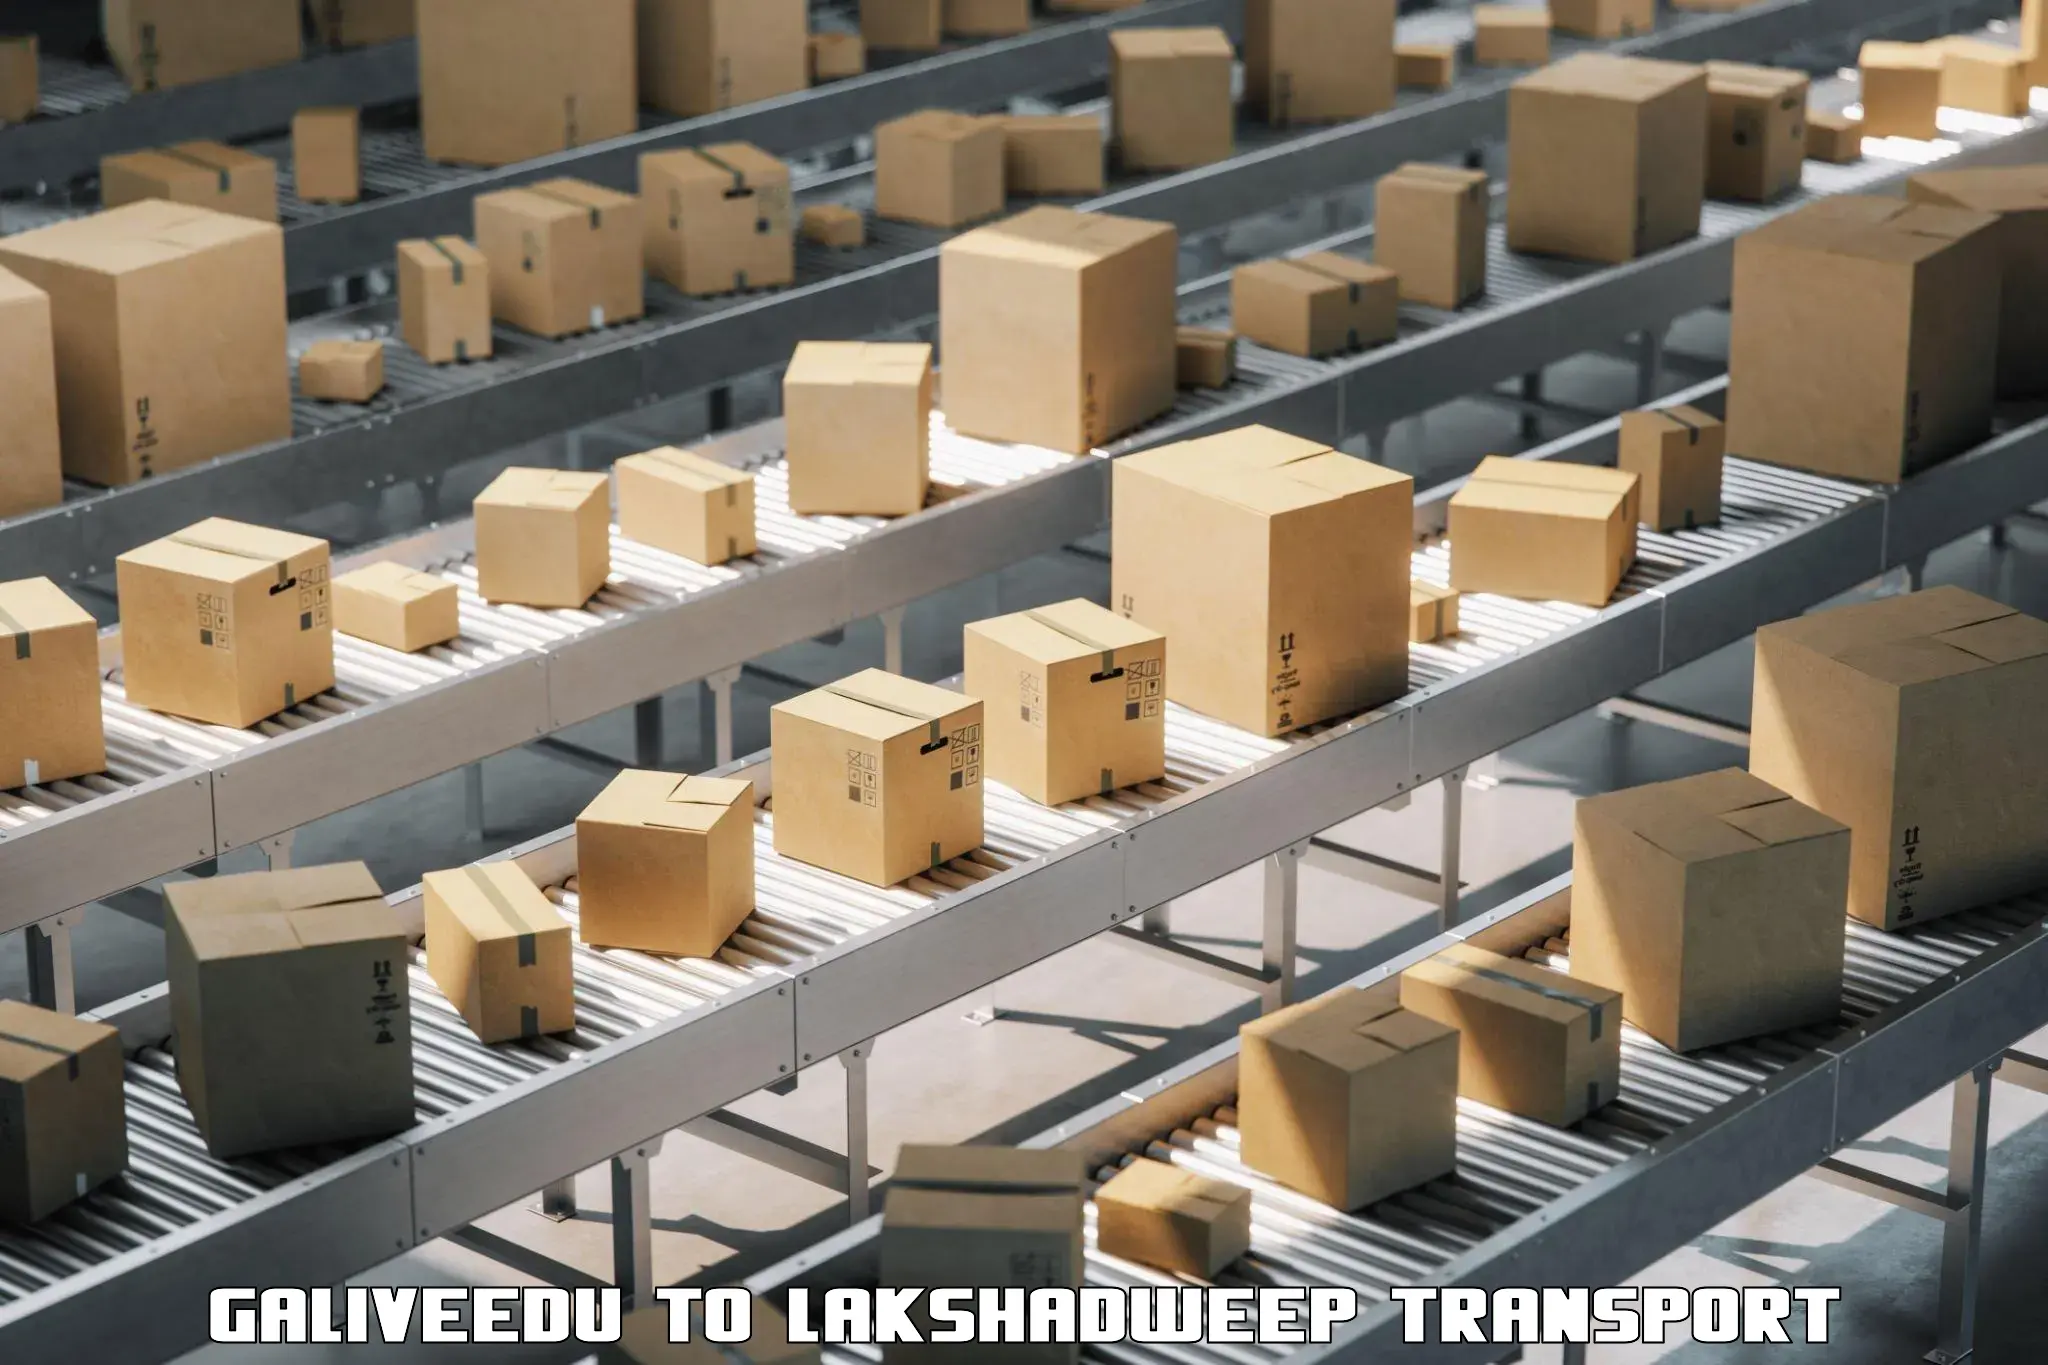 Two wheeler parcel service Galiveedu to Lakshadweep